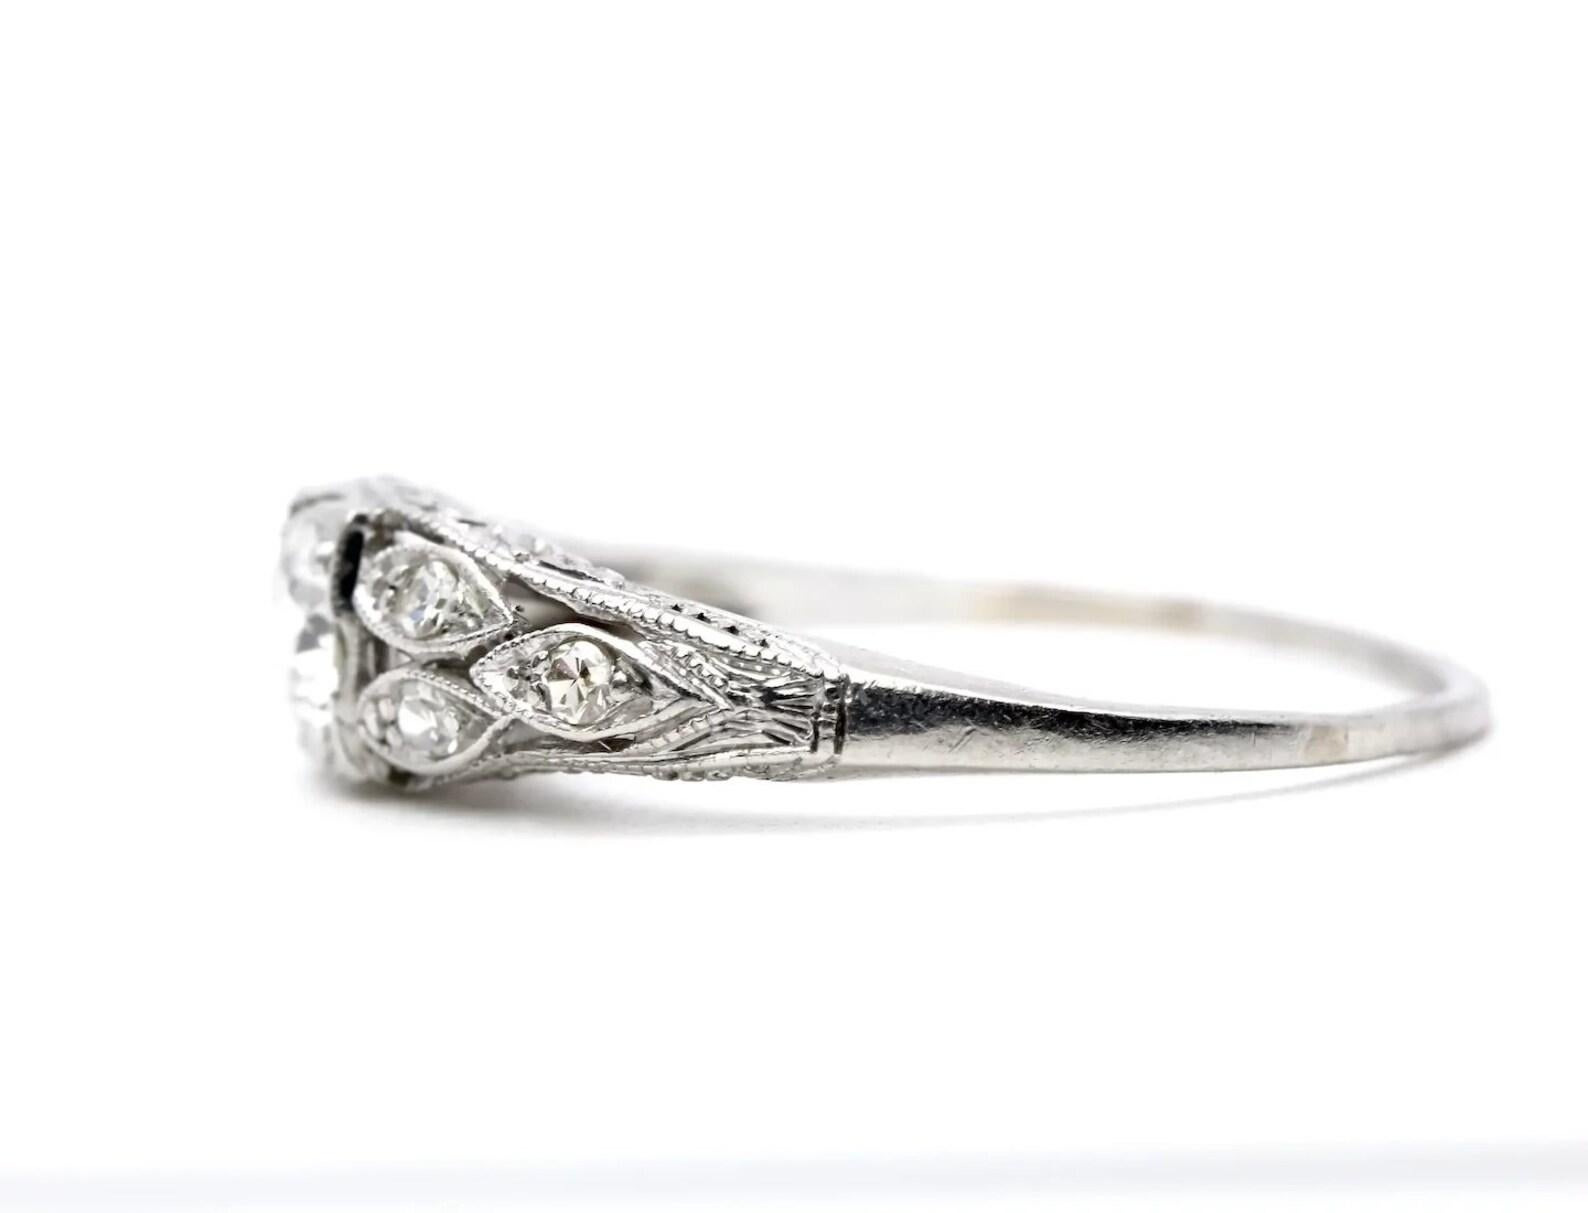 Ein diamantener Verlobungsring im Art-Deco-Stil aus Platin. In der Mitte befindet sich ein wunderschöner Diamant im alten europäischen Schliff von 0,52 Karat, Farbe G und Reinheit VS1. Dieser Ring ist mit sechs gepflasterten Diamanten von insgesamt